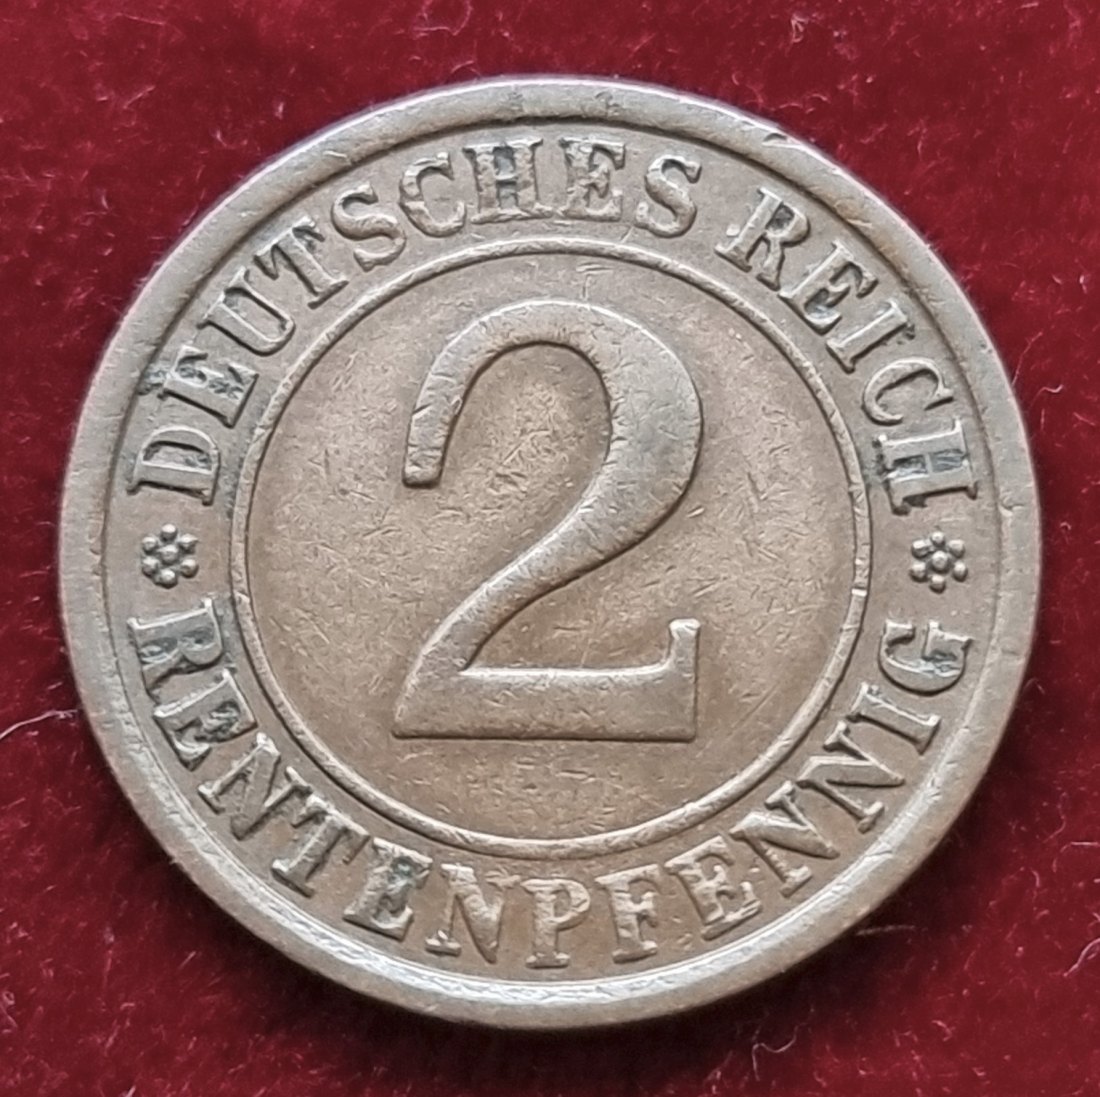  4516(09) 2 Rentenpfennig (Deutschland) 1924/A in ss ............................... von Berlin_coins   